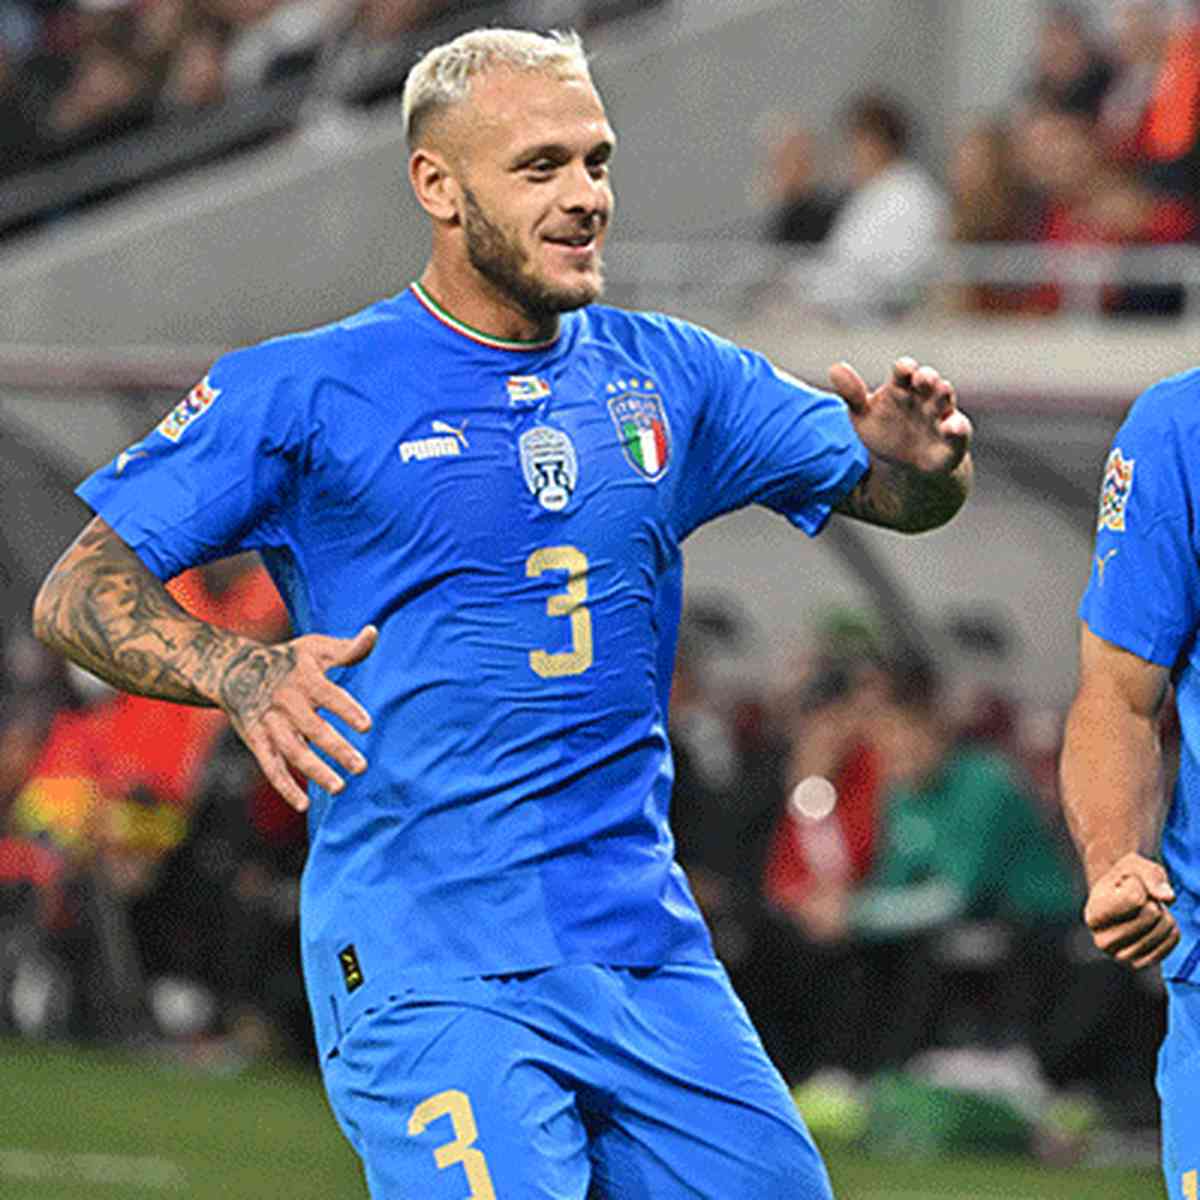 Quantas vezes a Itália não foi pra Copa?